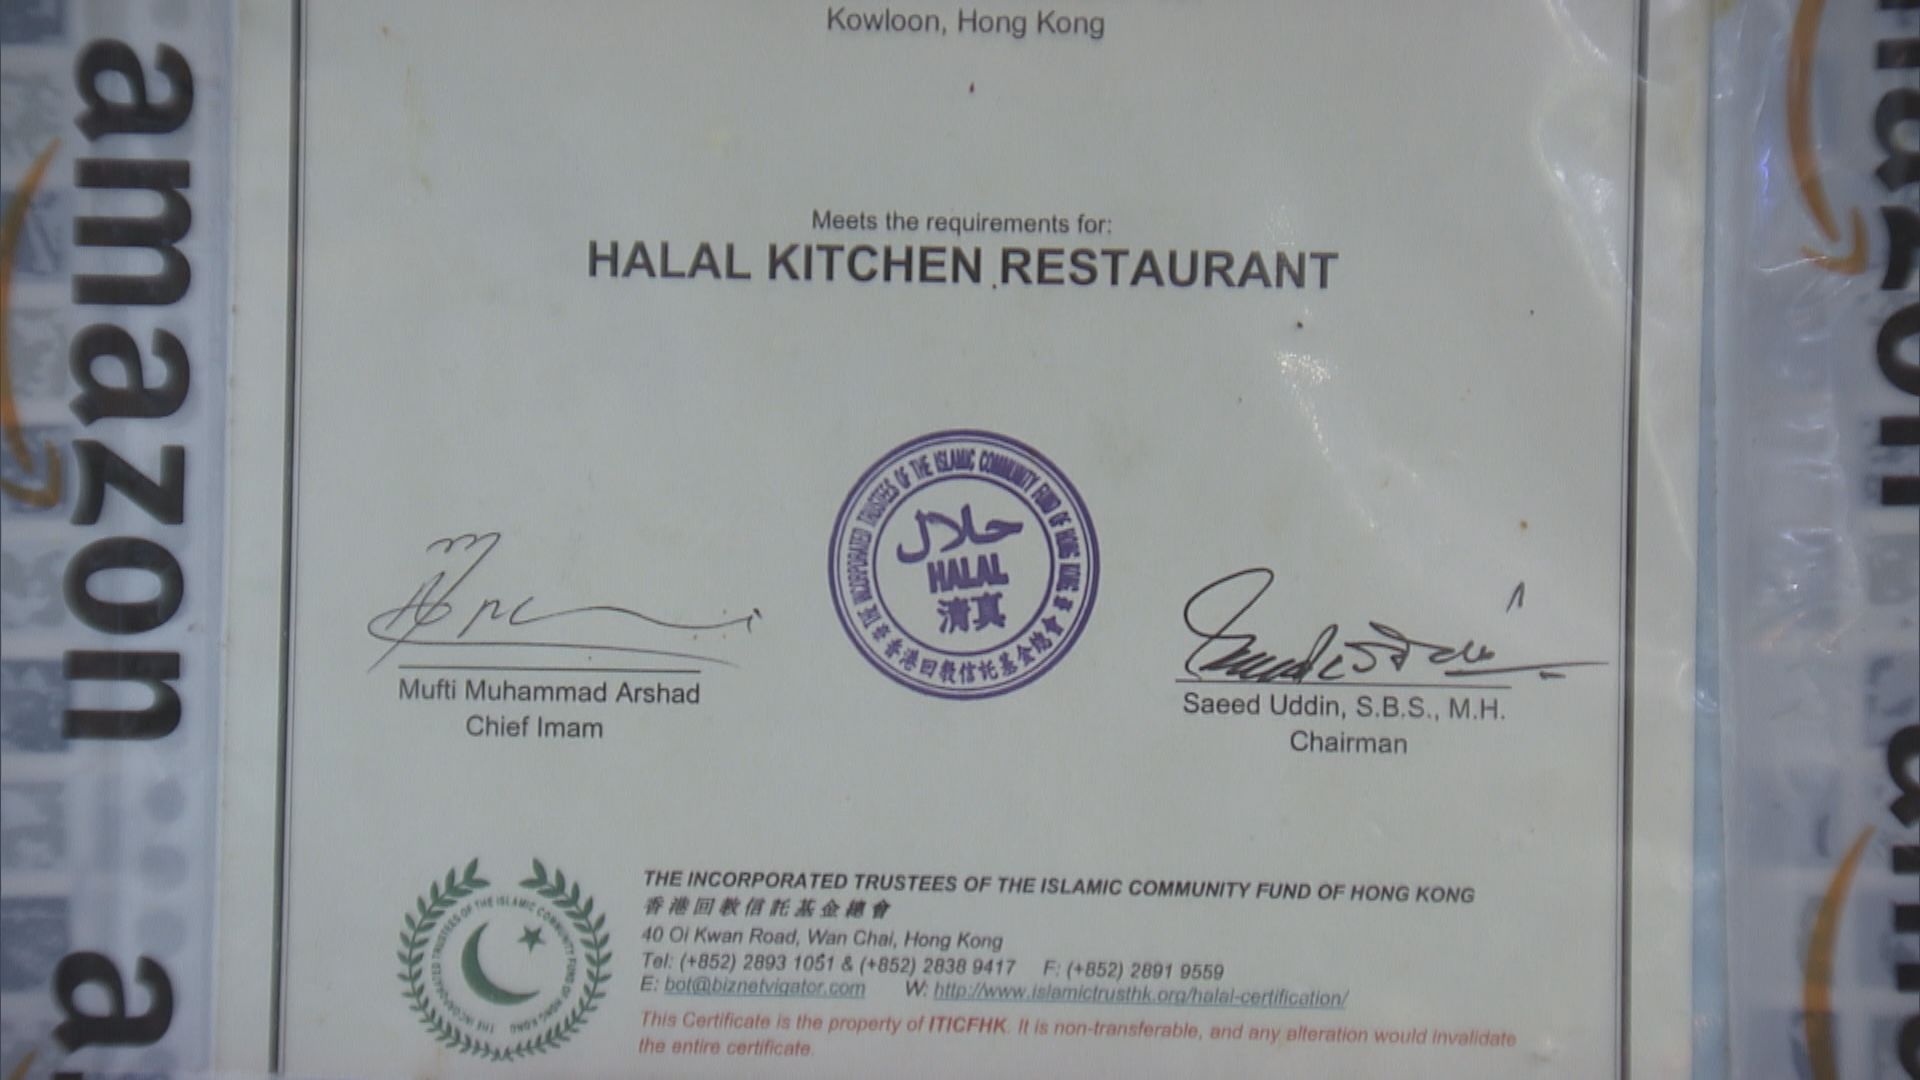 港旅業瞄準中東高增值旅客 穆斯林倡推廣清真餐廳認證